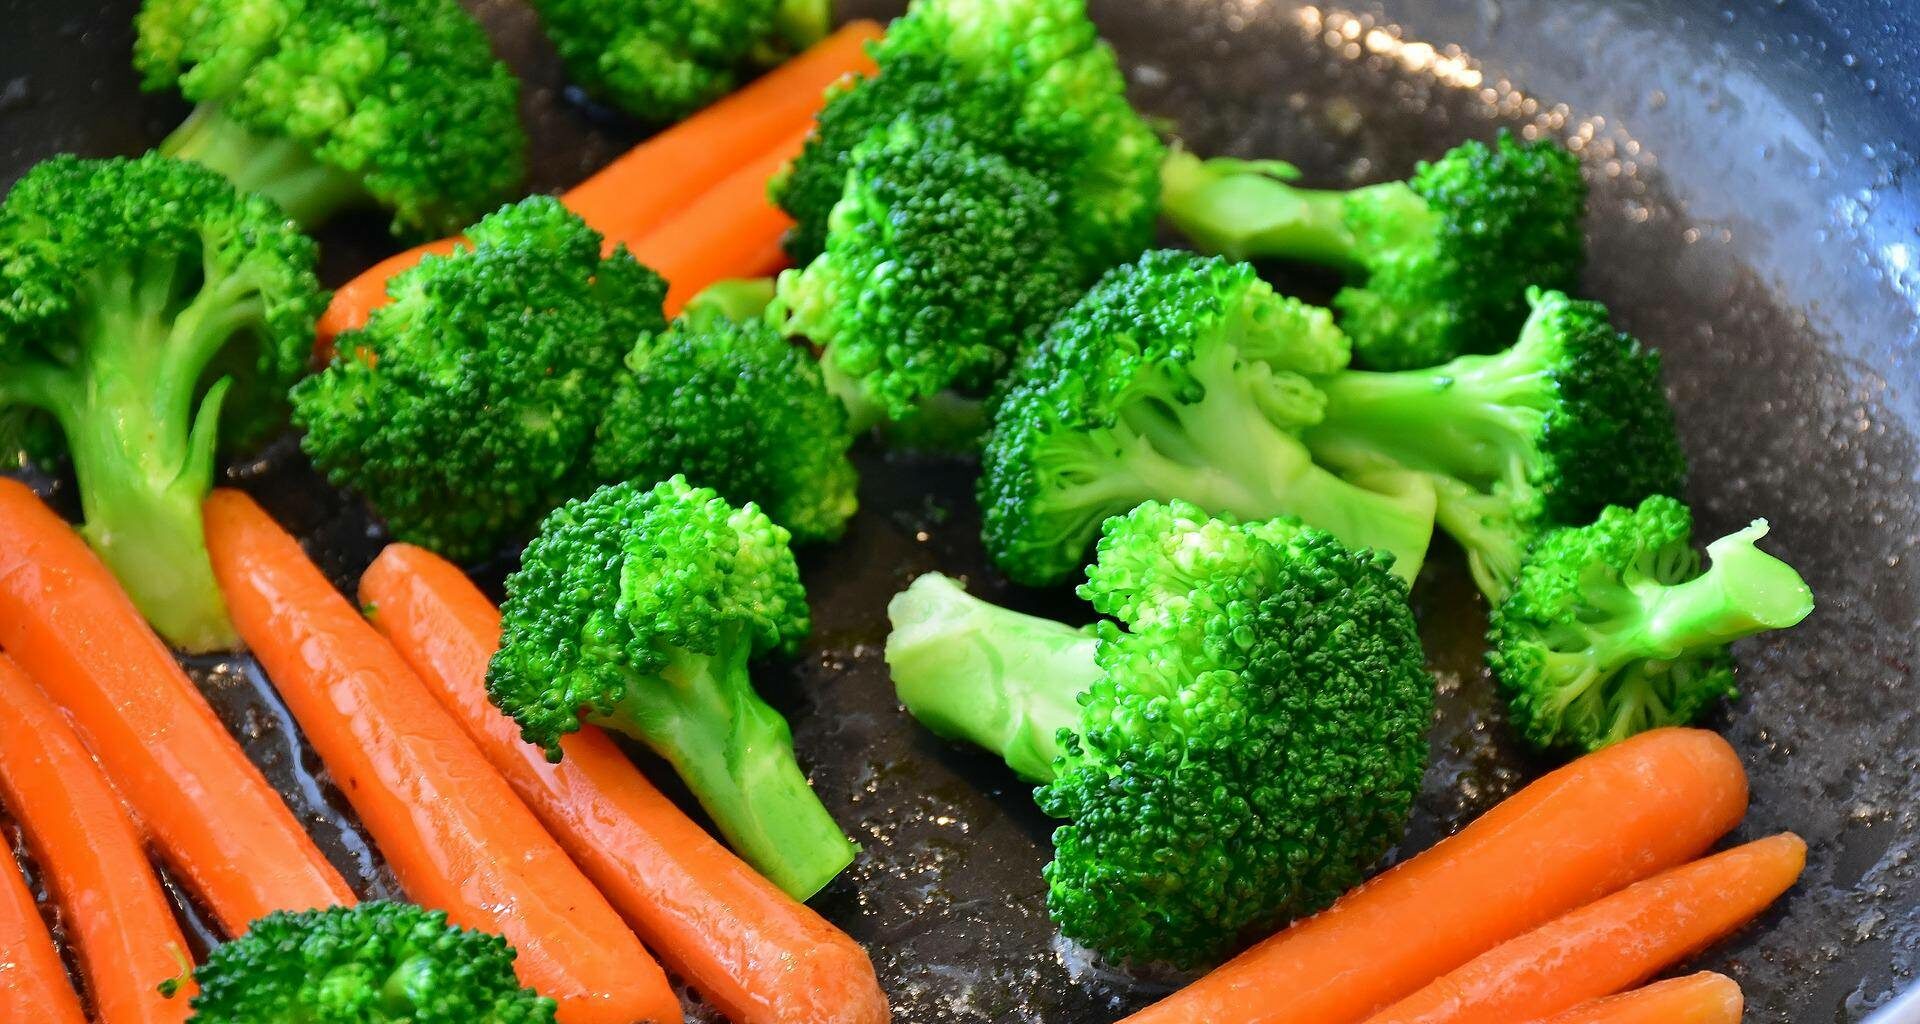 Roh oder gekocht? Die Auswirkungen von Gemüse auf die Herz-Kreislauf-Gesundheit (CVD)